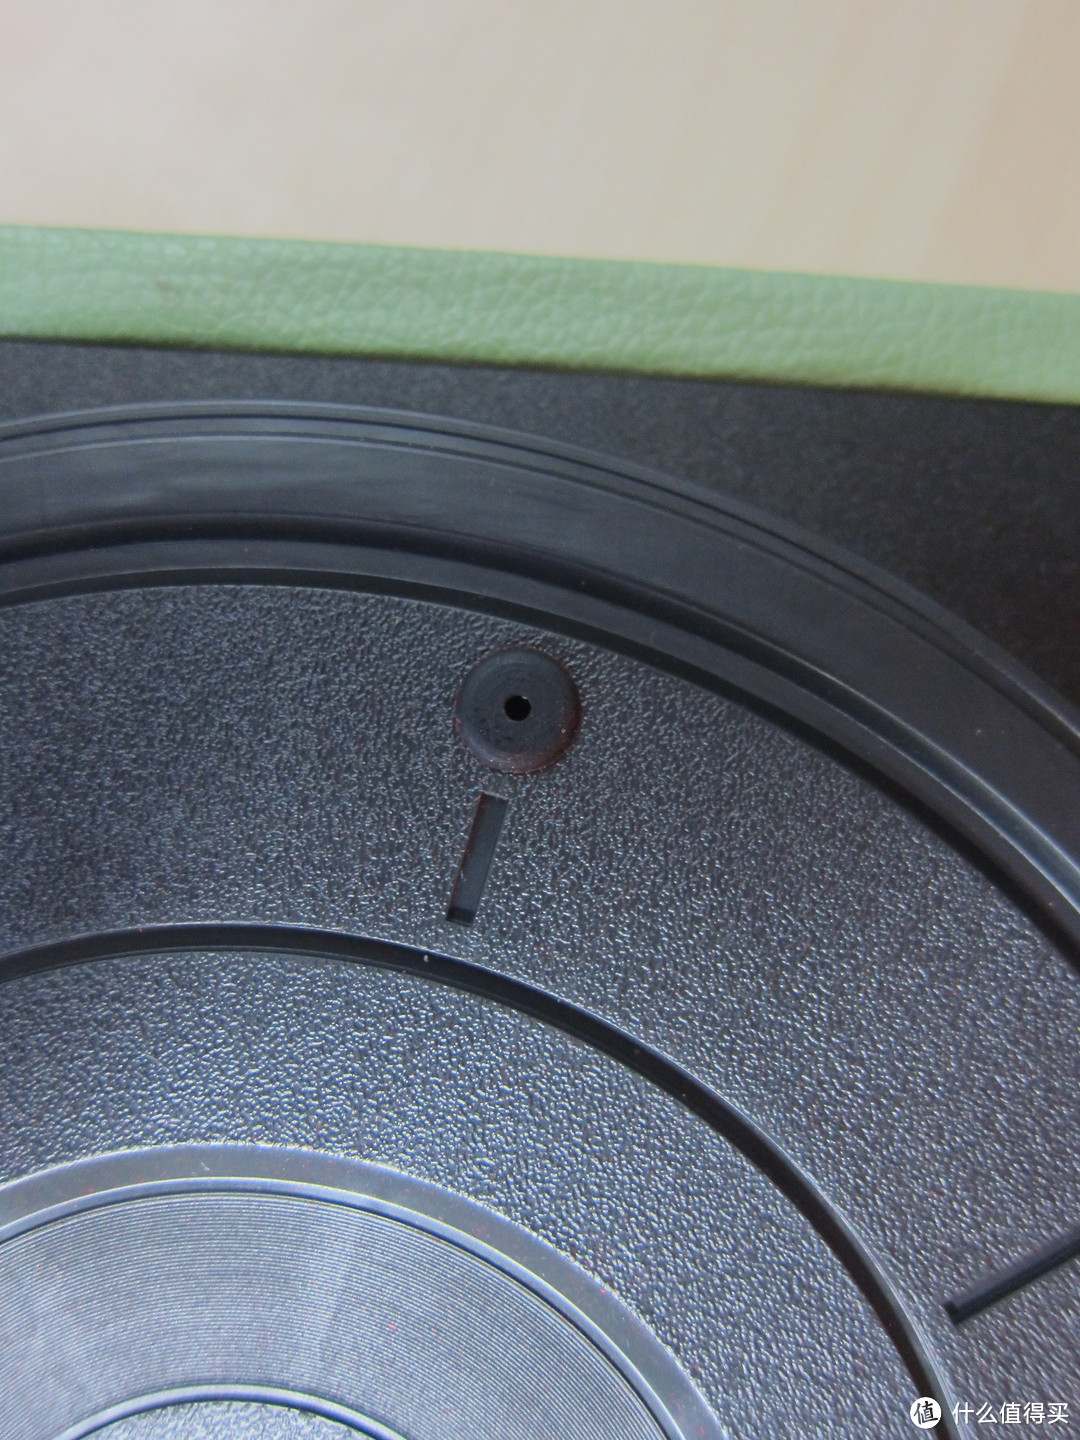 唱片转盘上有三个黑色橡胶垫，主要用于防滑